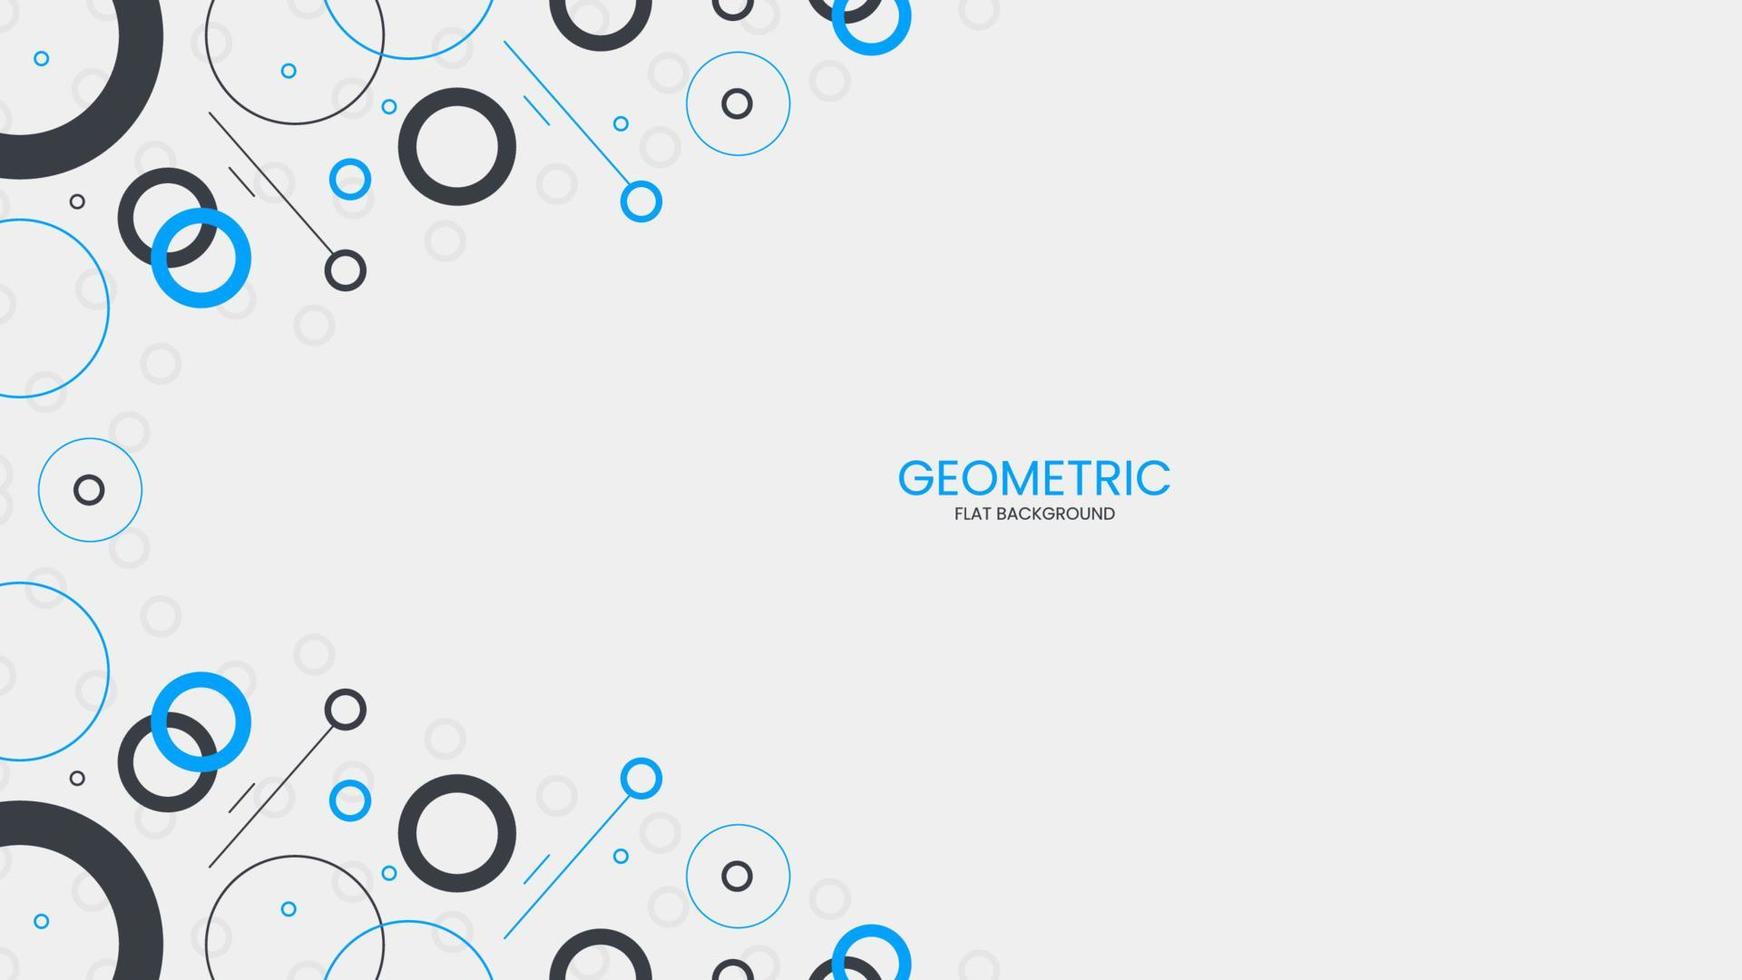 plano geométrico de fondo abstracto con objeto circular vector